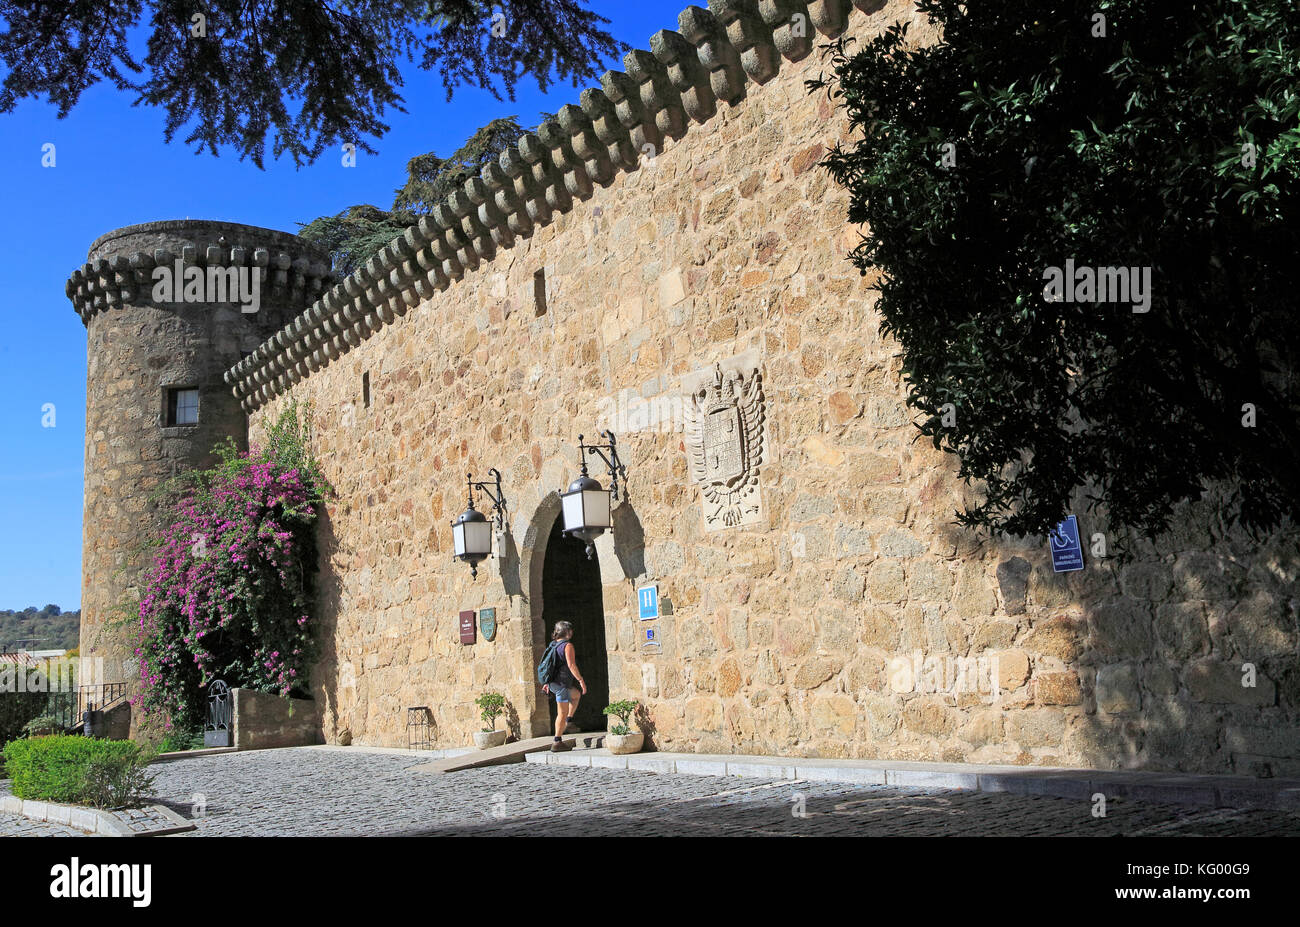 Historic castle Parador hotel, Jarandilla de la Vera, La Vera, Extremadura, Spain Stock Photo